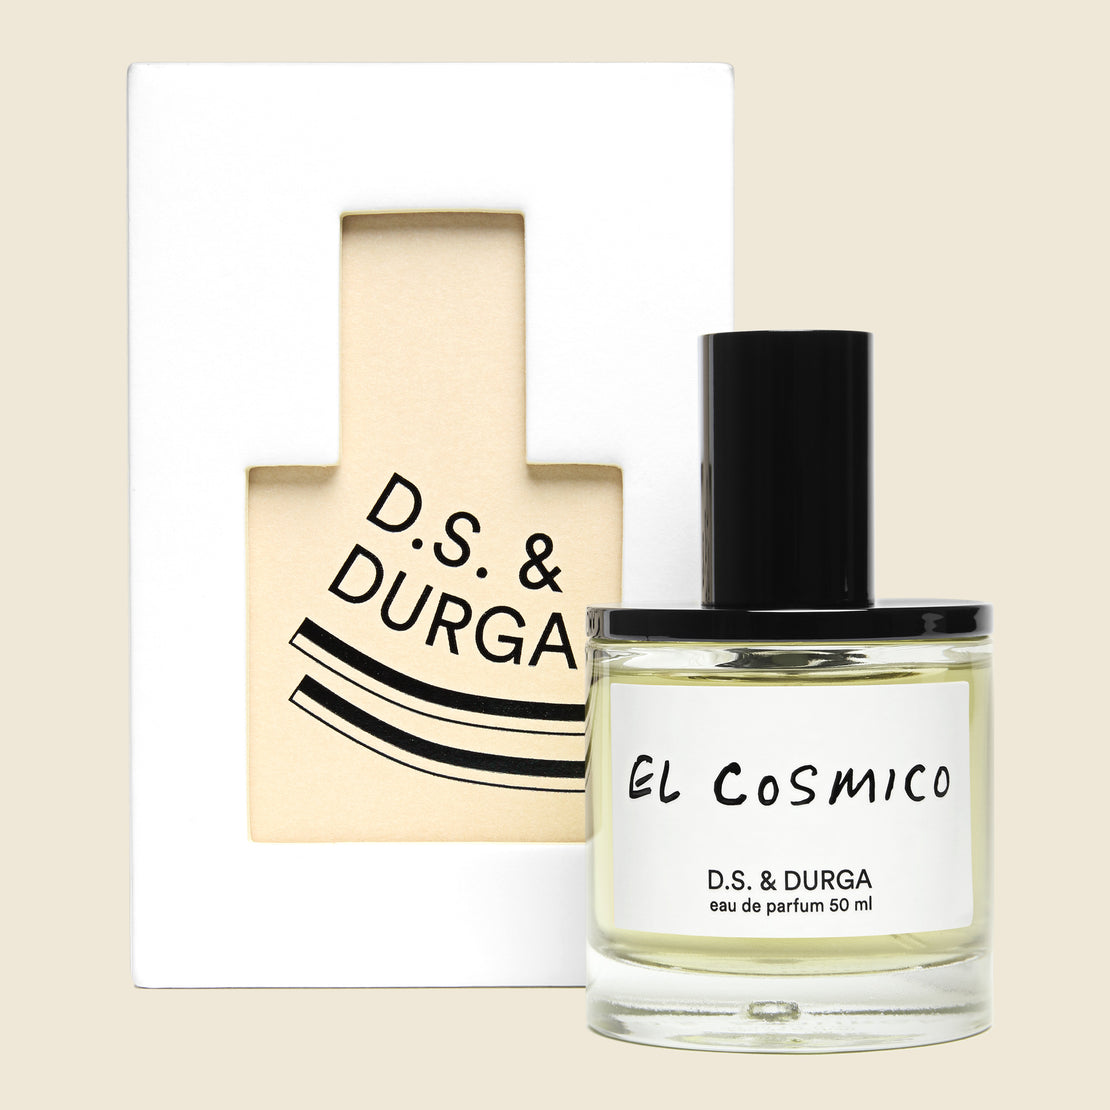 D.S. & Durga Perfume - El Cosmico